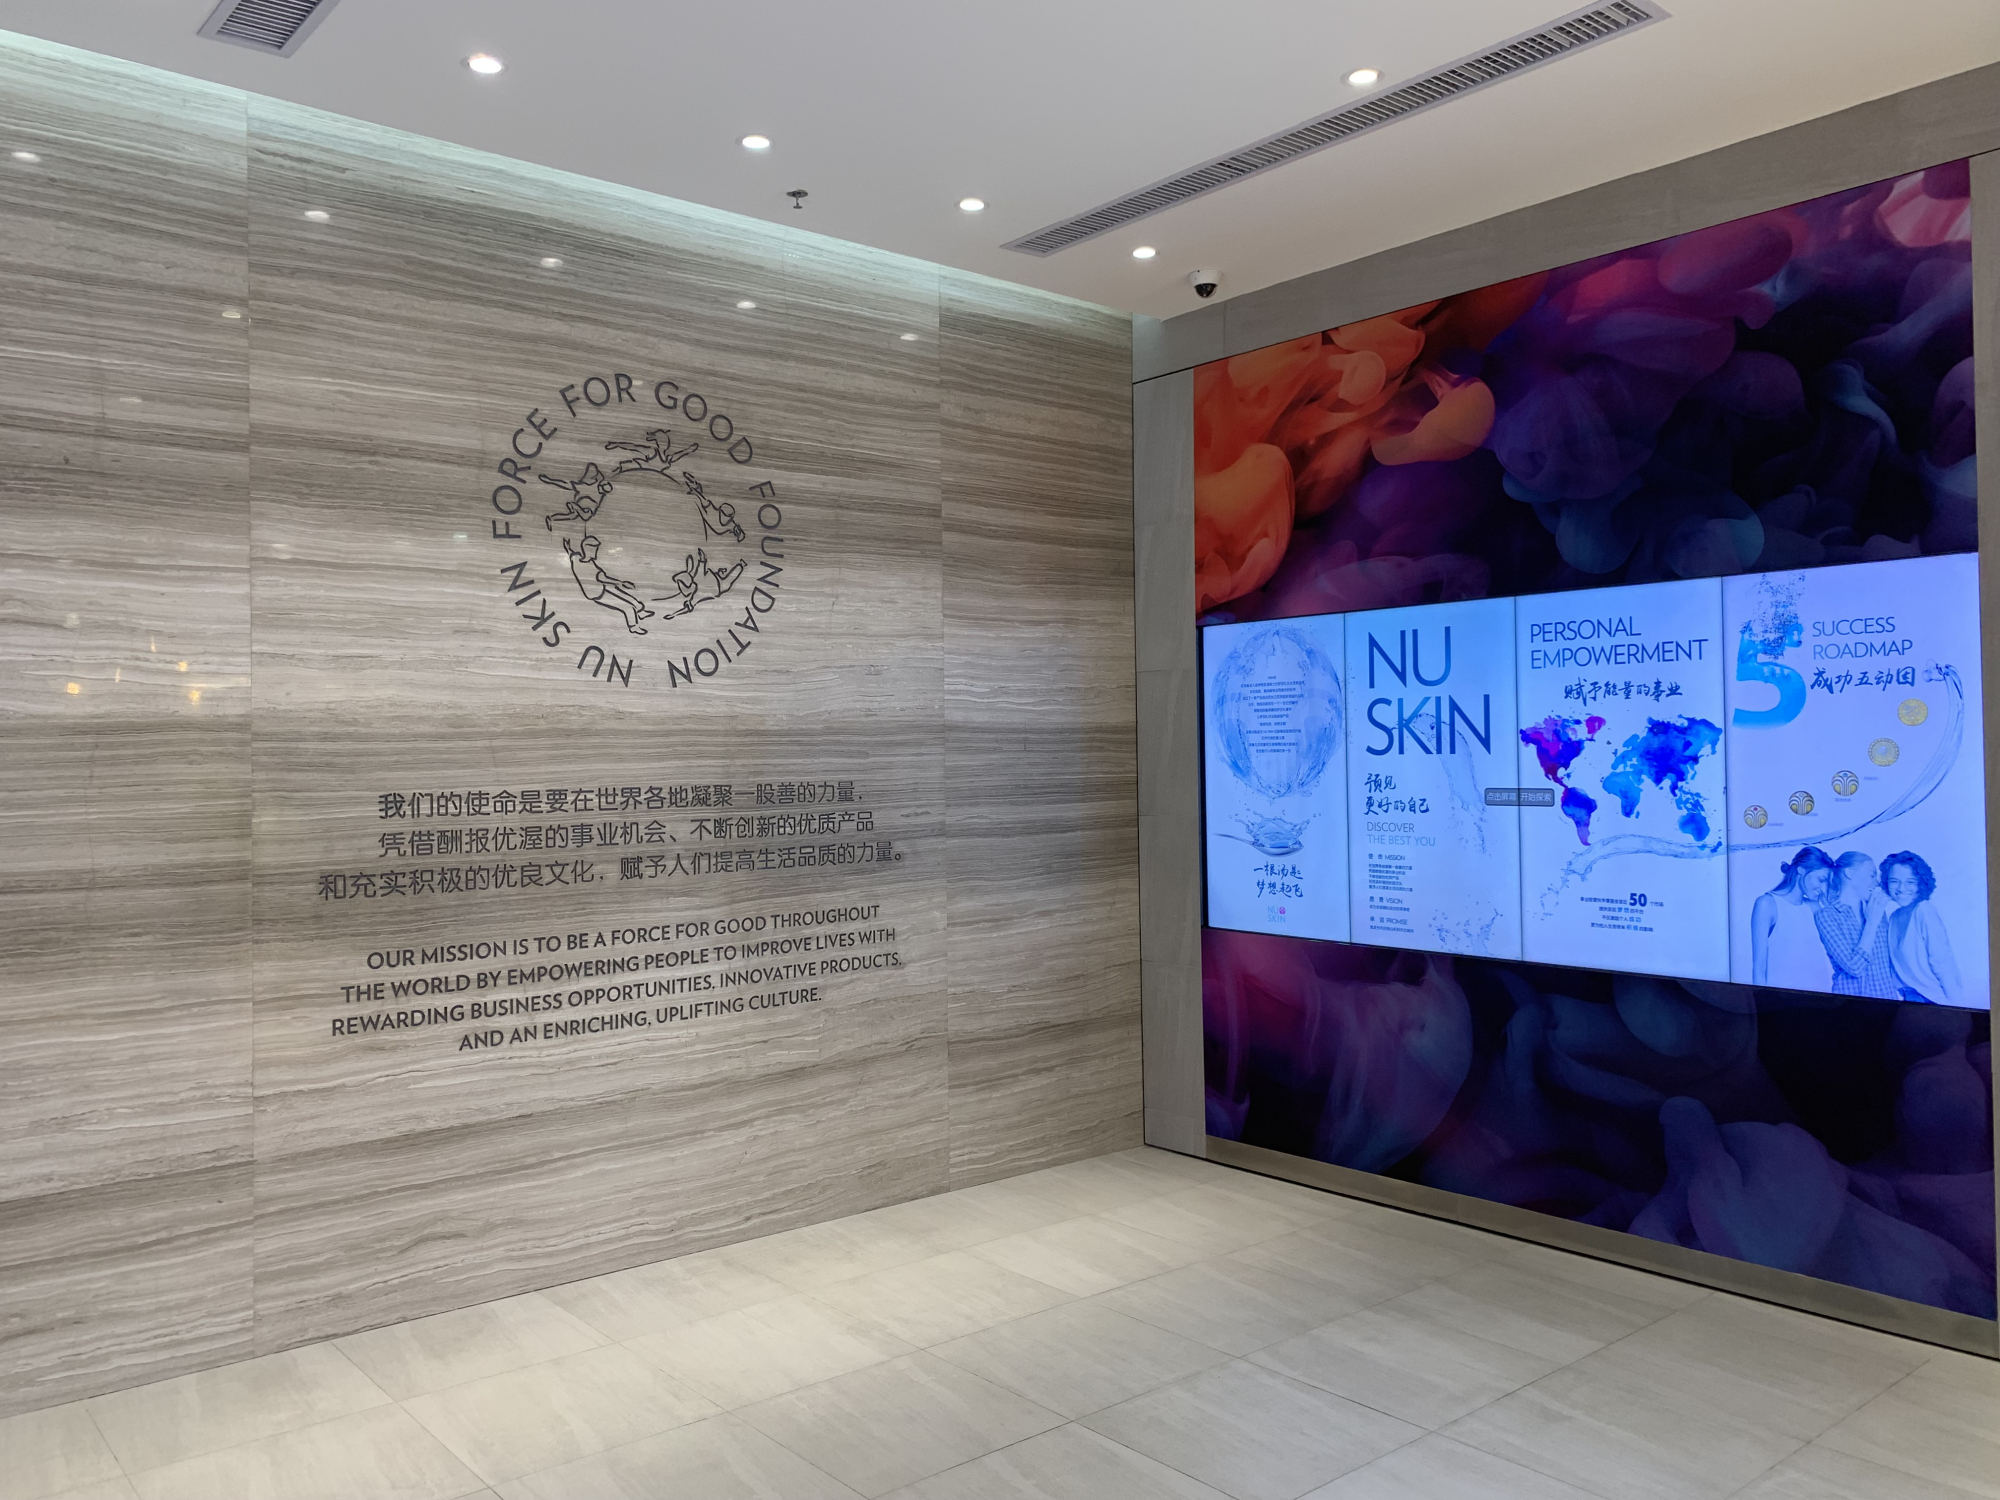 Nu Skin experience center